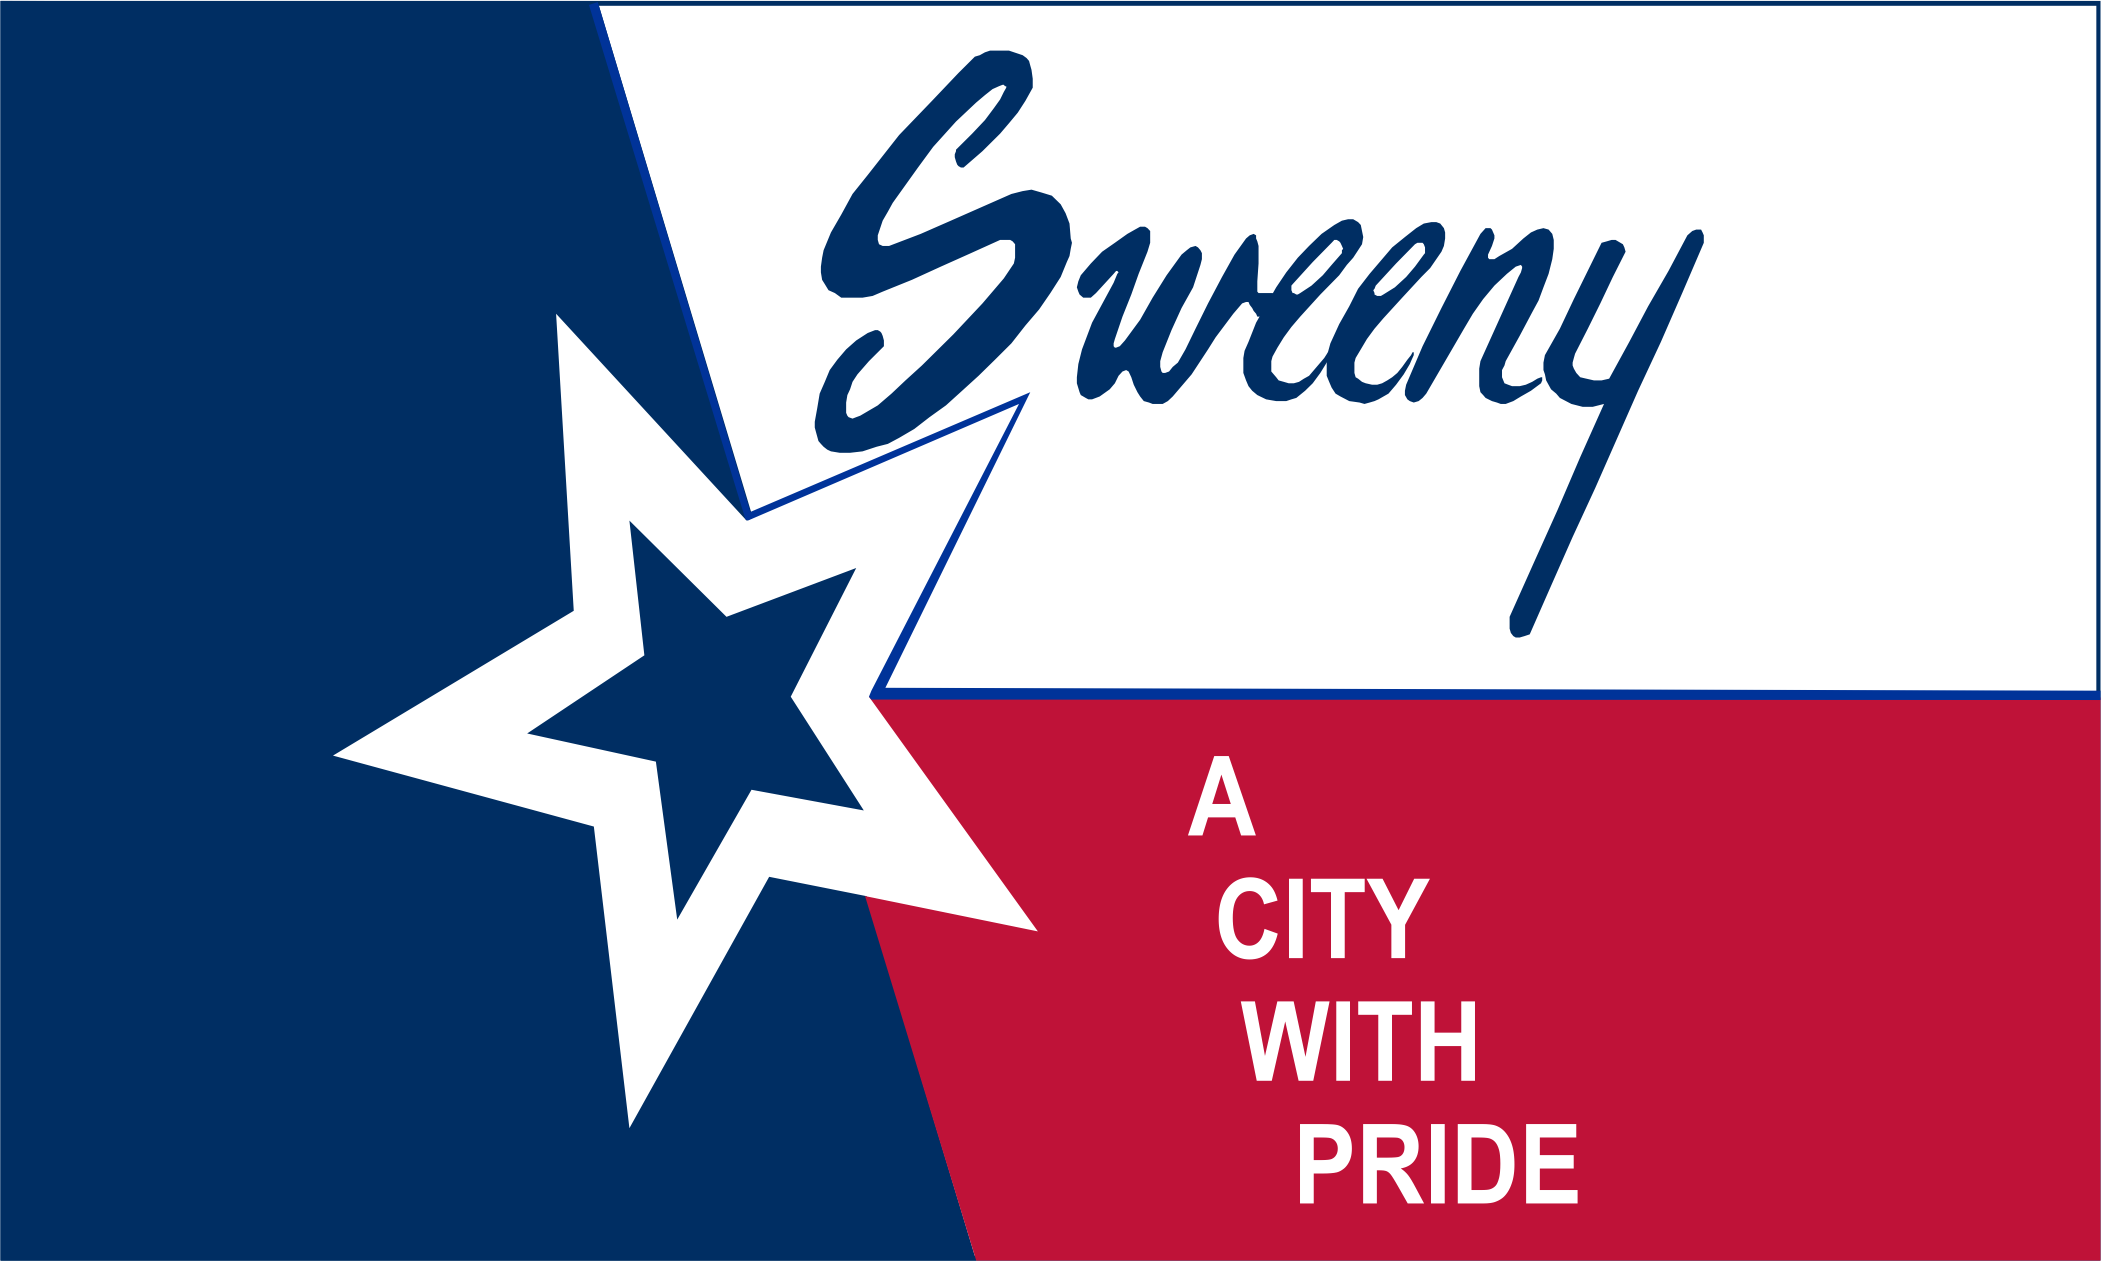 Sweeny, TX Logo